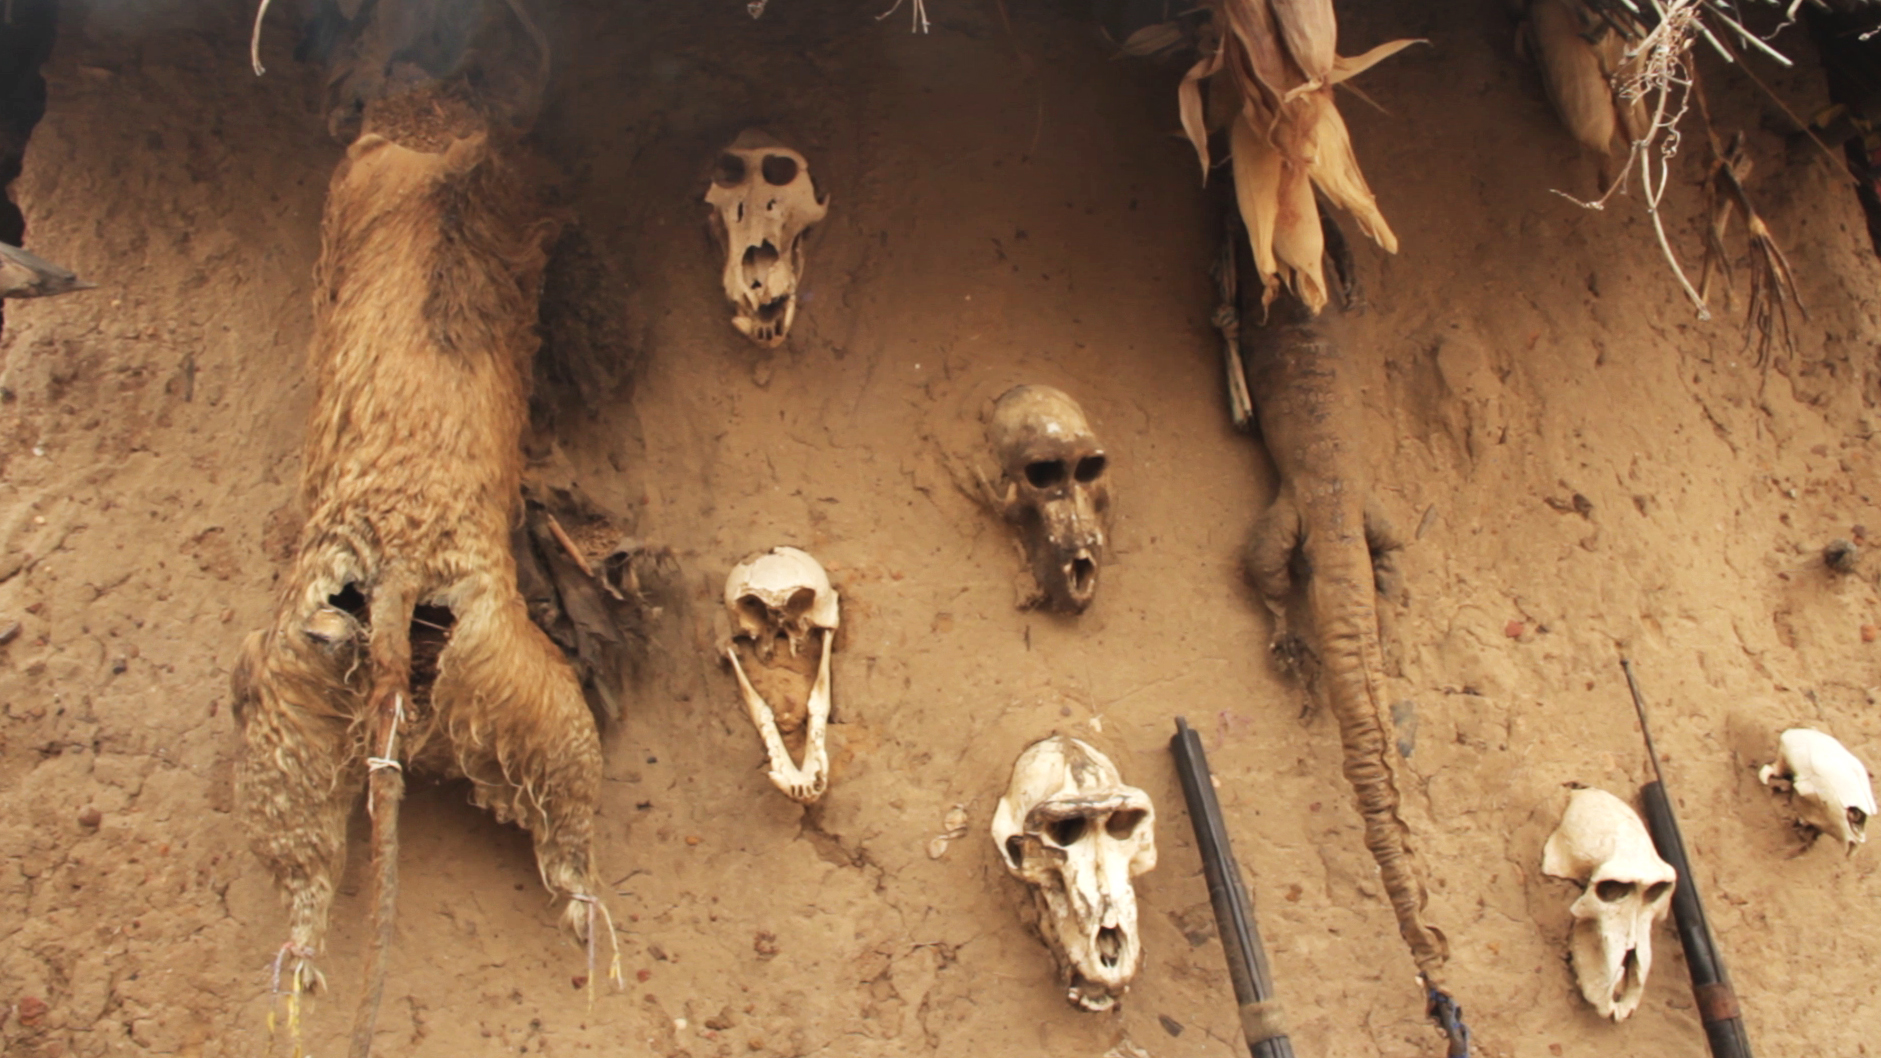 cabezas monos dogon cazador pablocaminante - Malí 9, País Dogon VI: La danza de máscaras